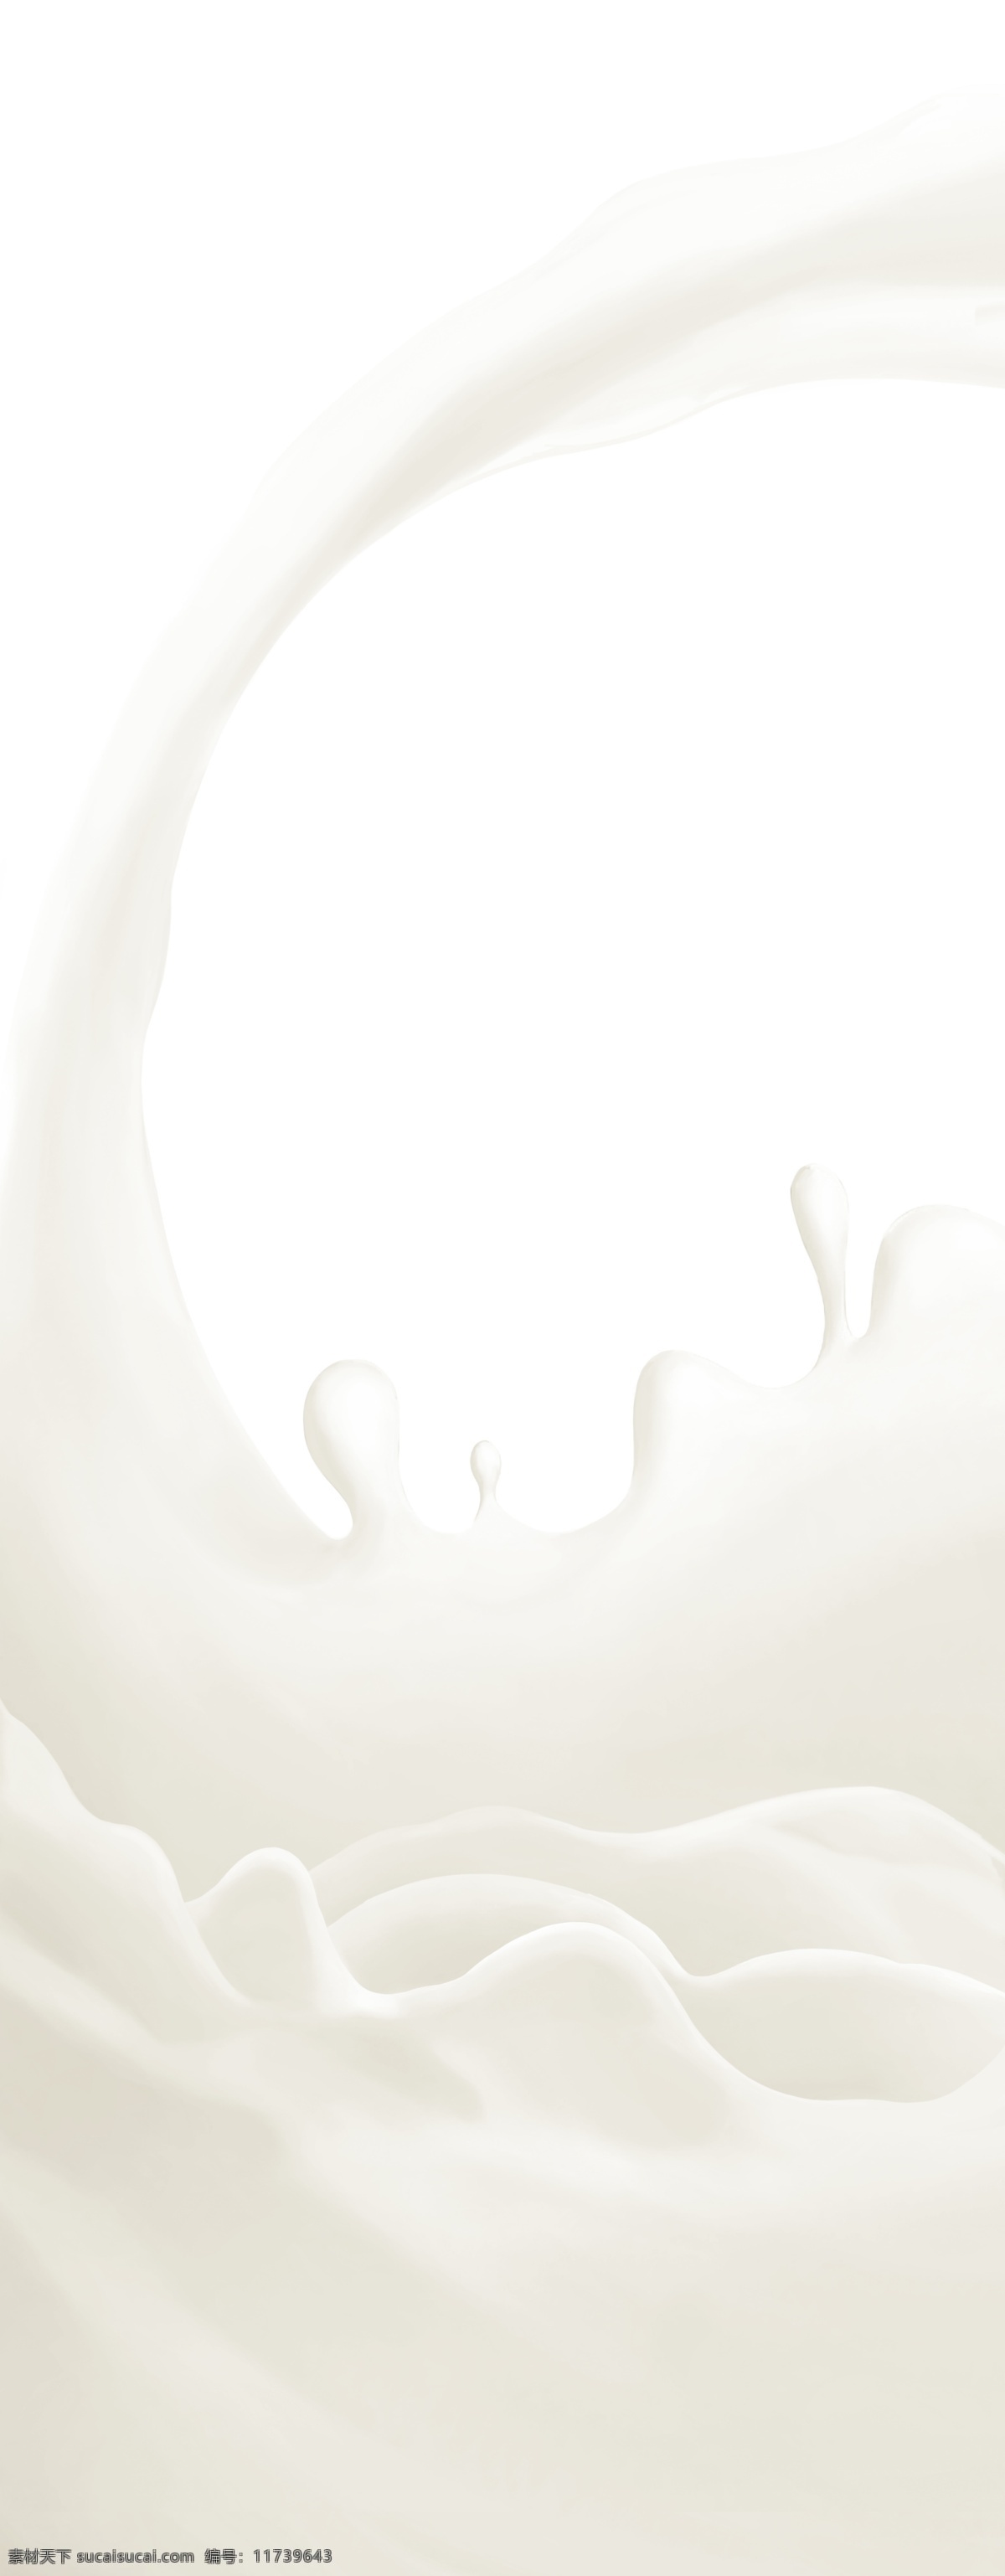 分层 蒙牛 牛奶 平面设计 元素 源文件库 蒙 花 模板下载 蒙牛奶花元素 psd源文件 餐饮素材